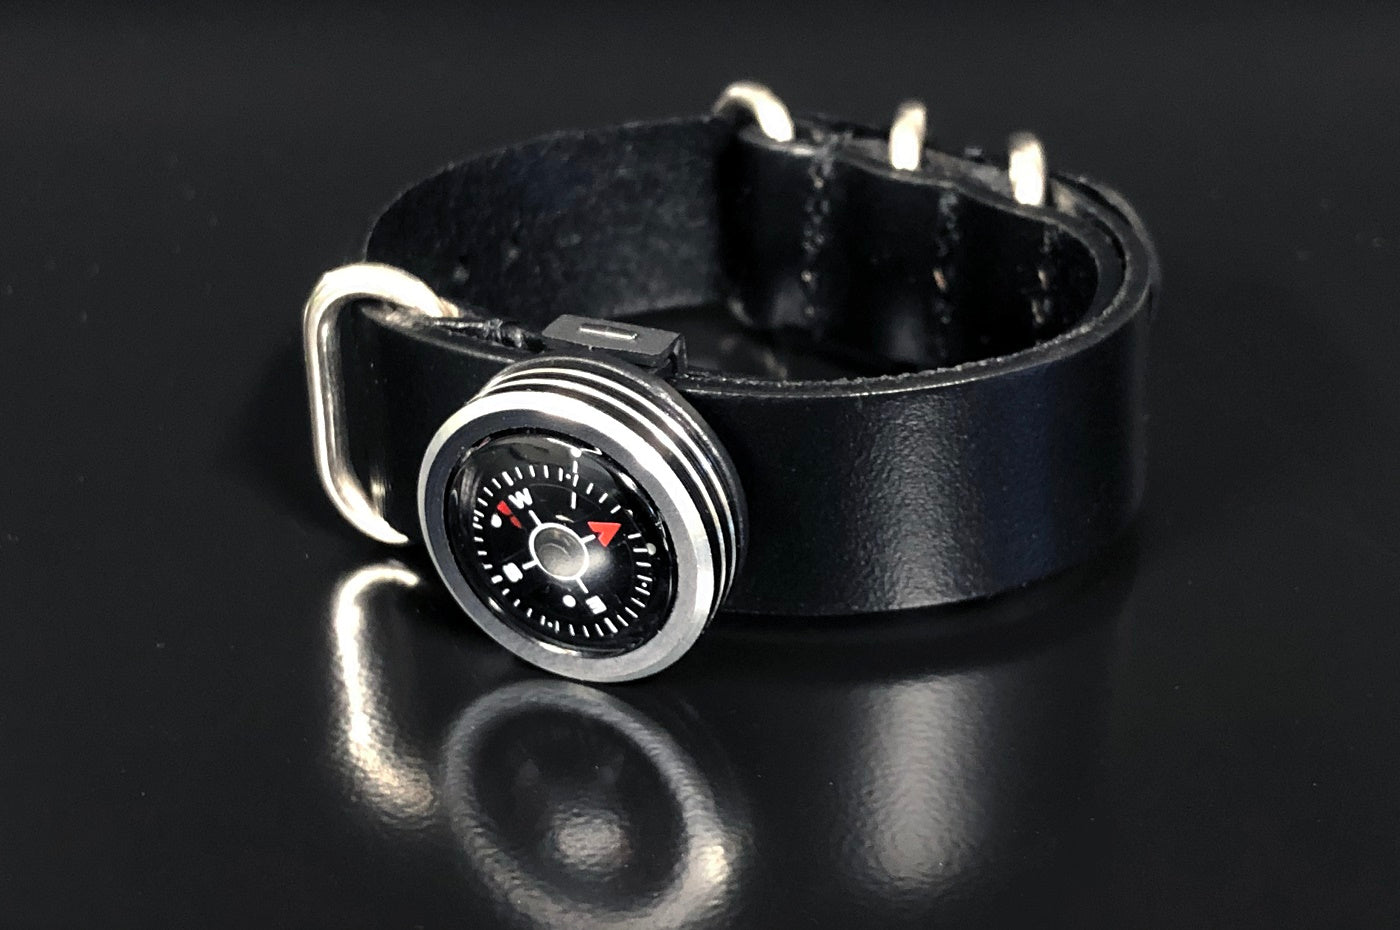 Aluminum Wrist Compass - Black Leather, on black table